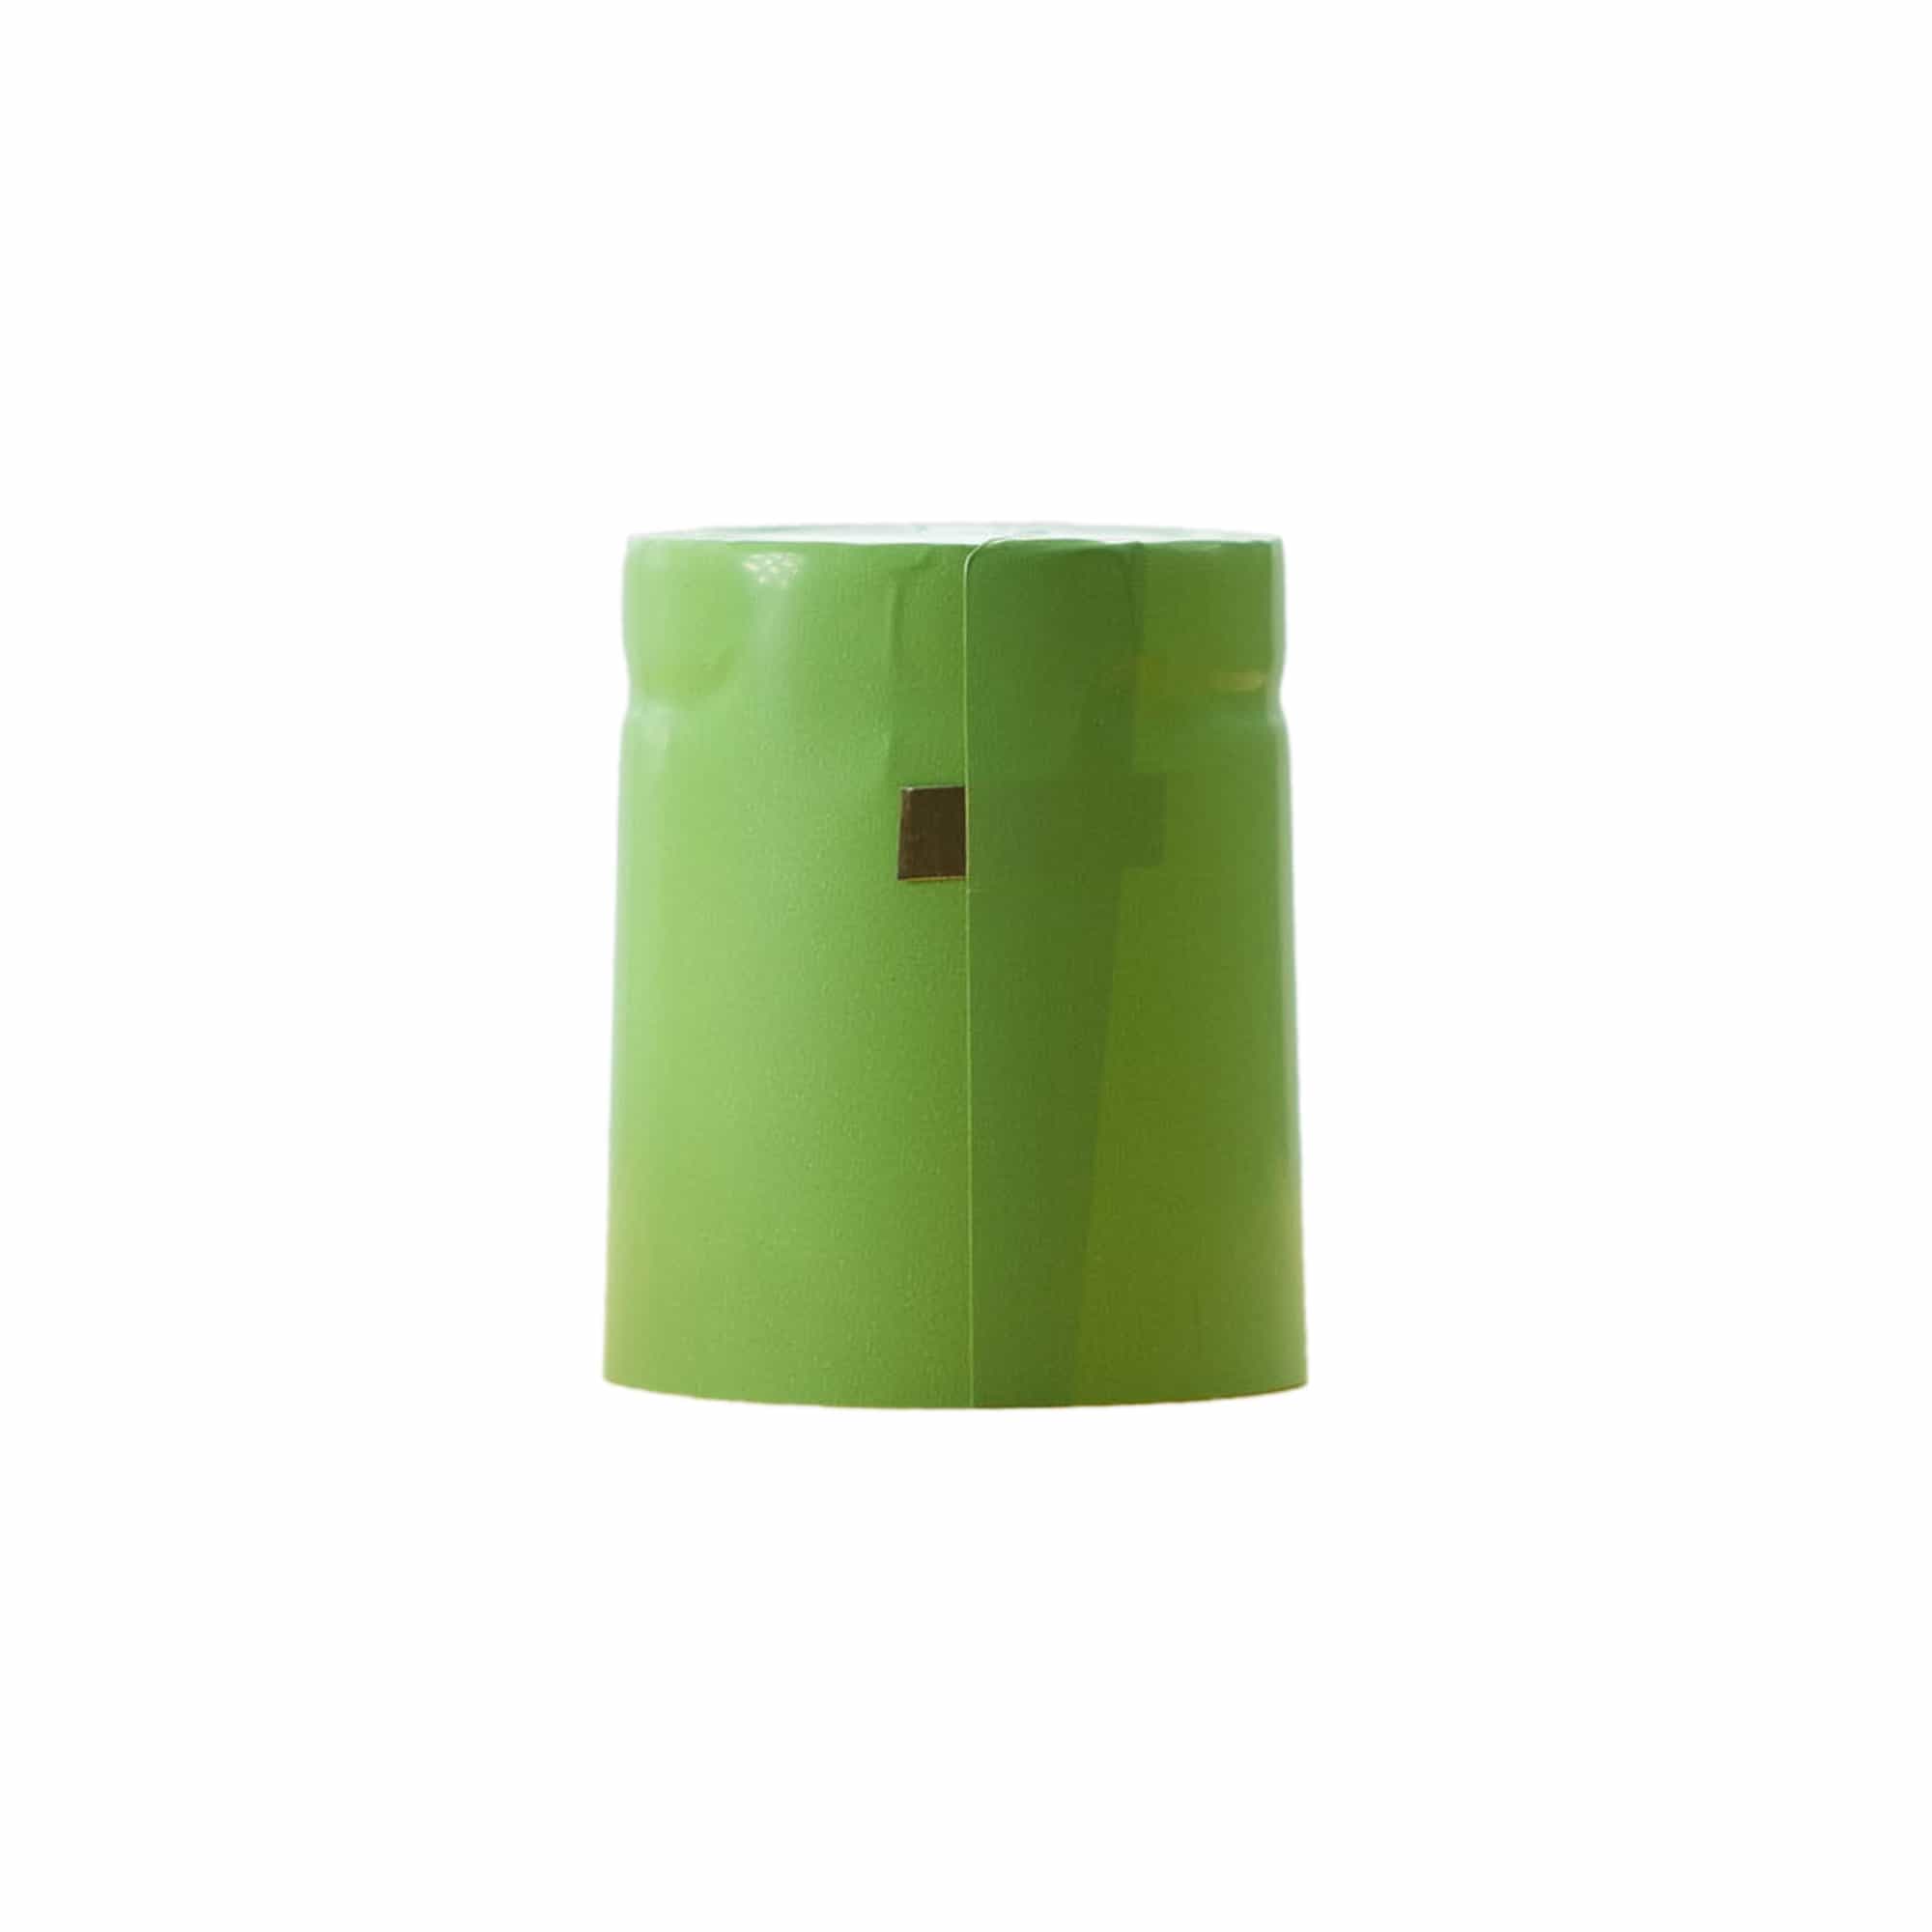 Krimpcapsule 32x41, pvc-kunststof, lichtgroen